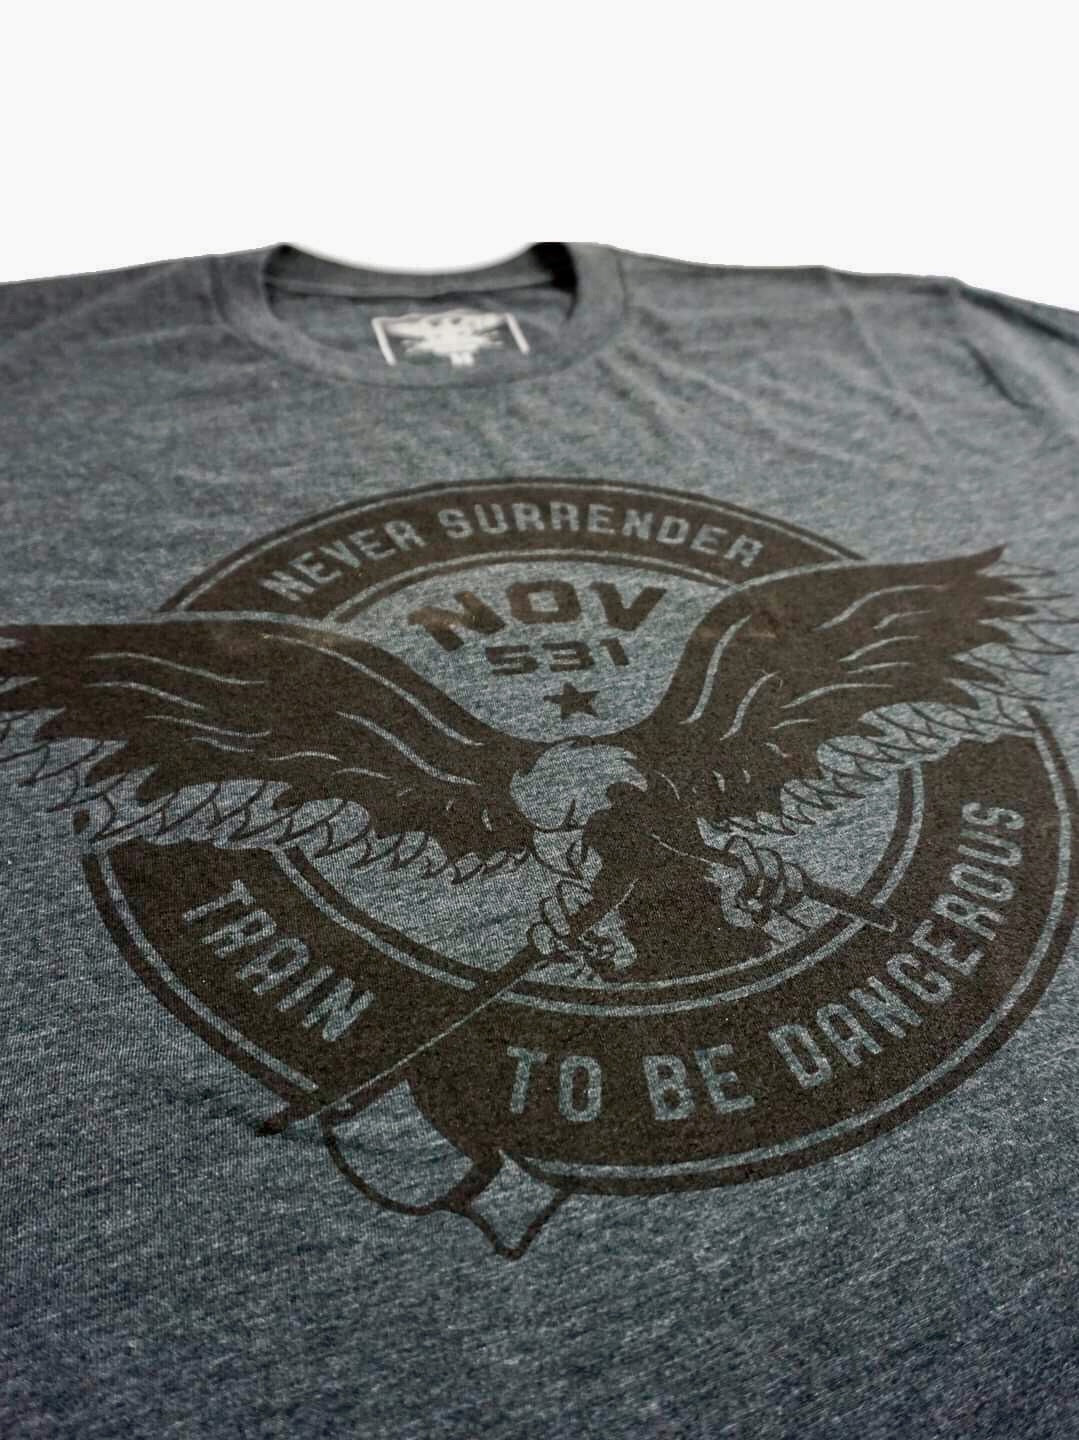 Never Surrender Shirt - Grey